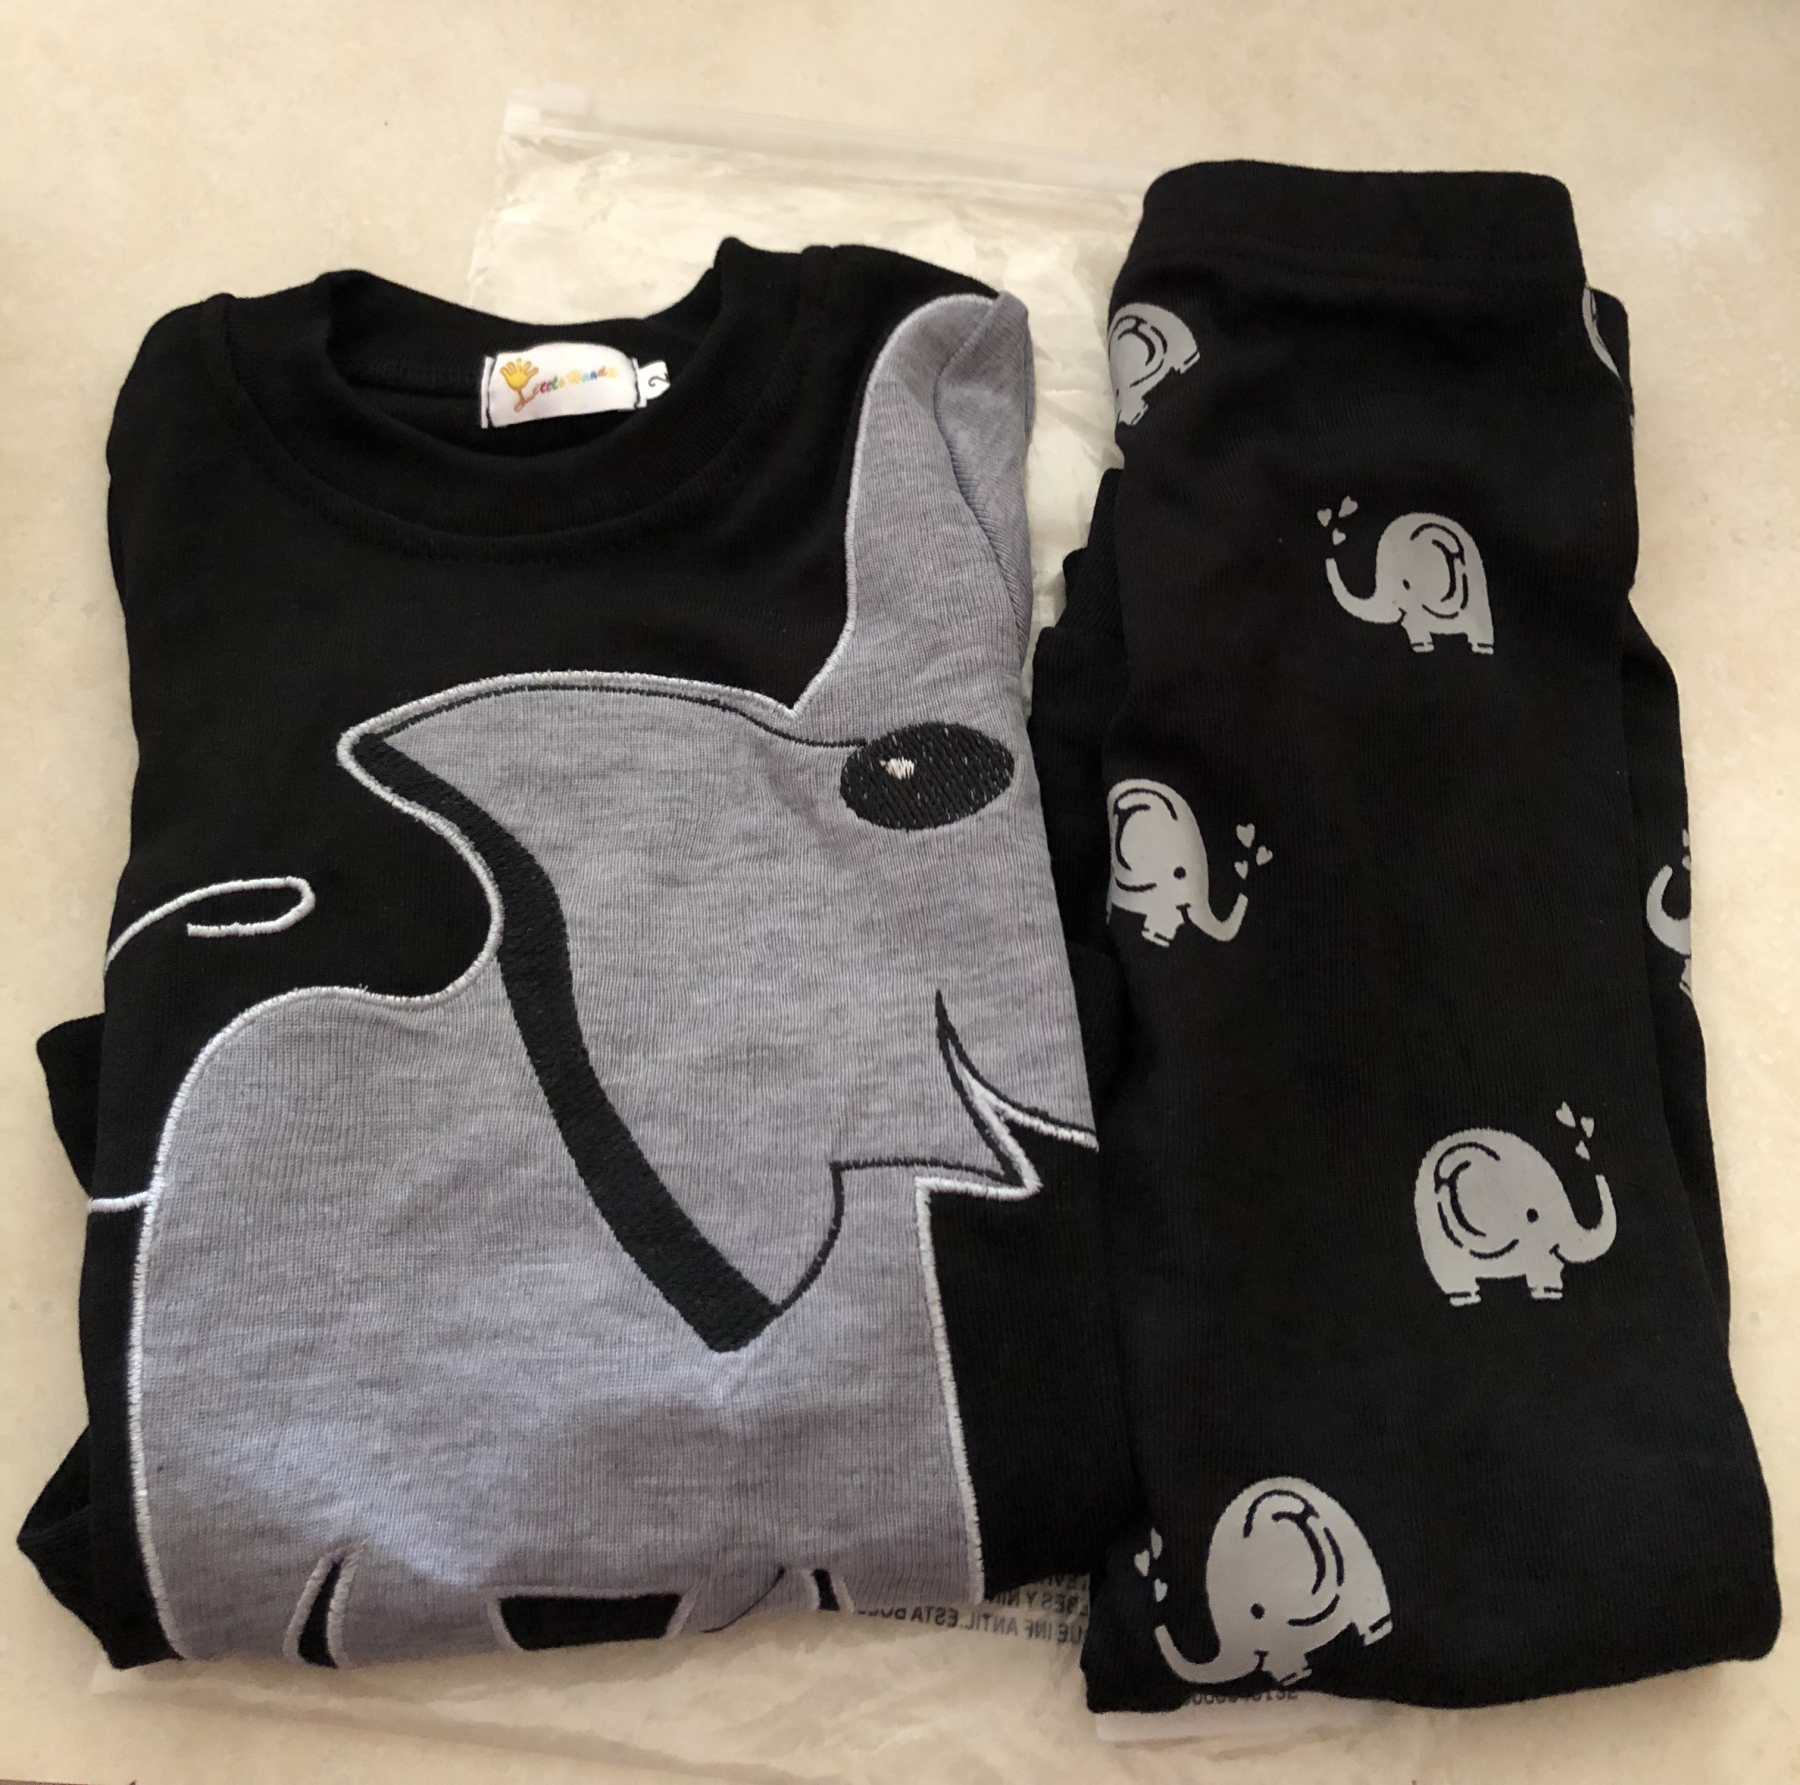 Elephant Pijamas